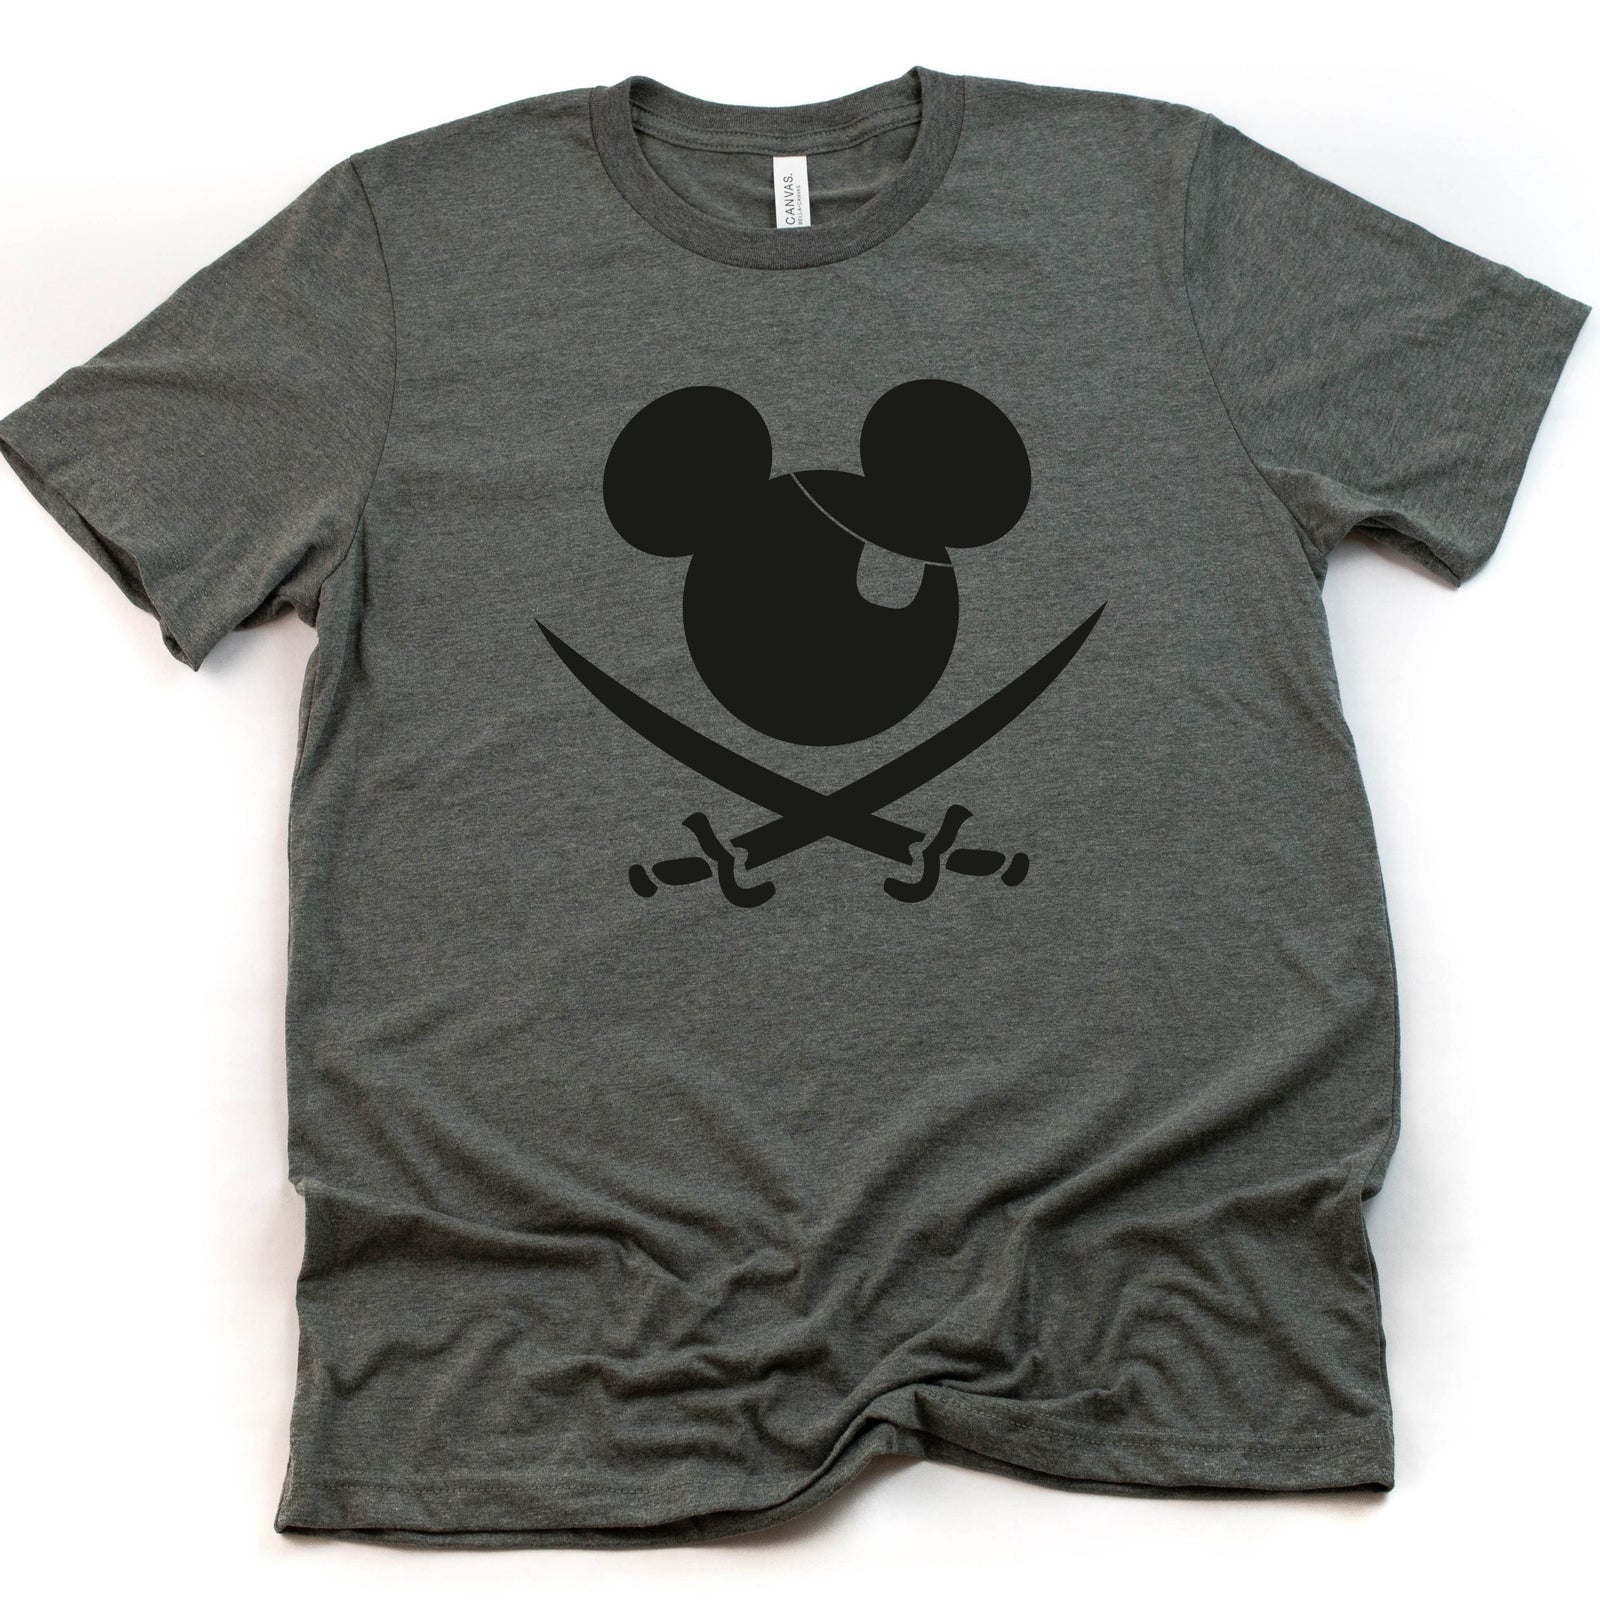 Pirate Mickey t shirt - Disney Trip Matching Shirts - Mickey Mouse